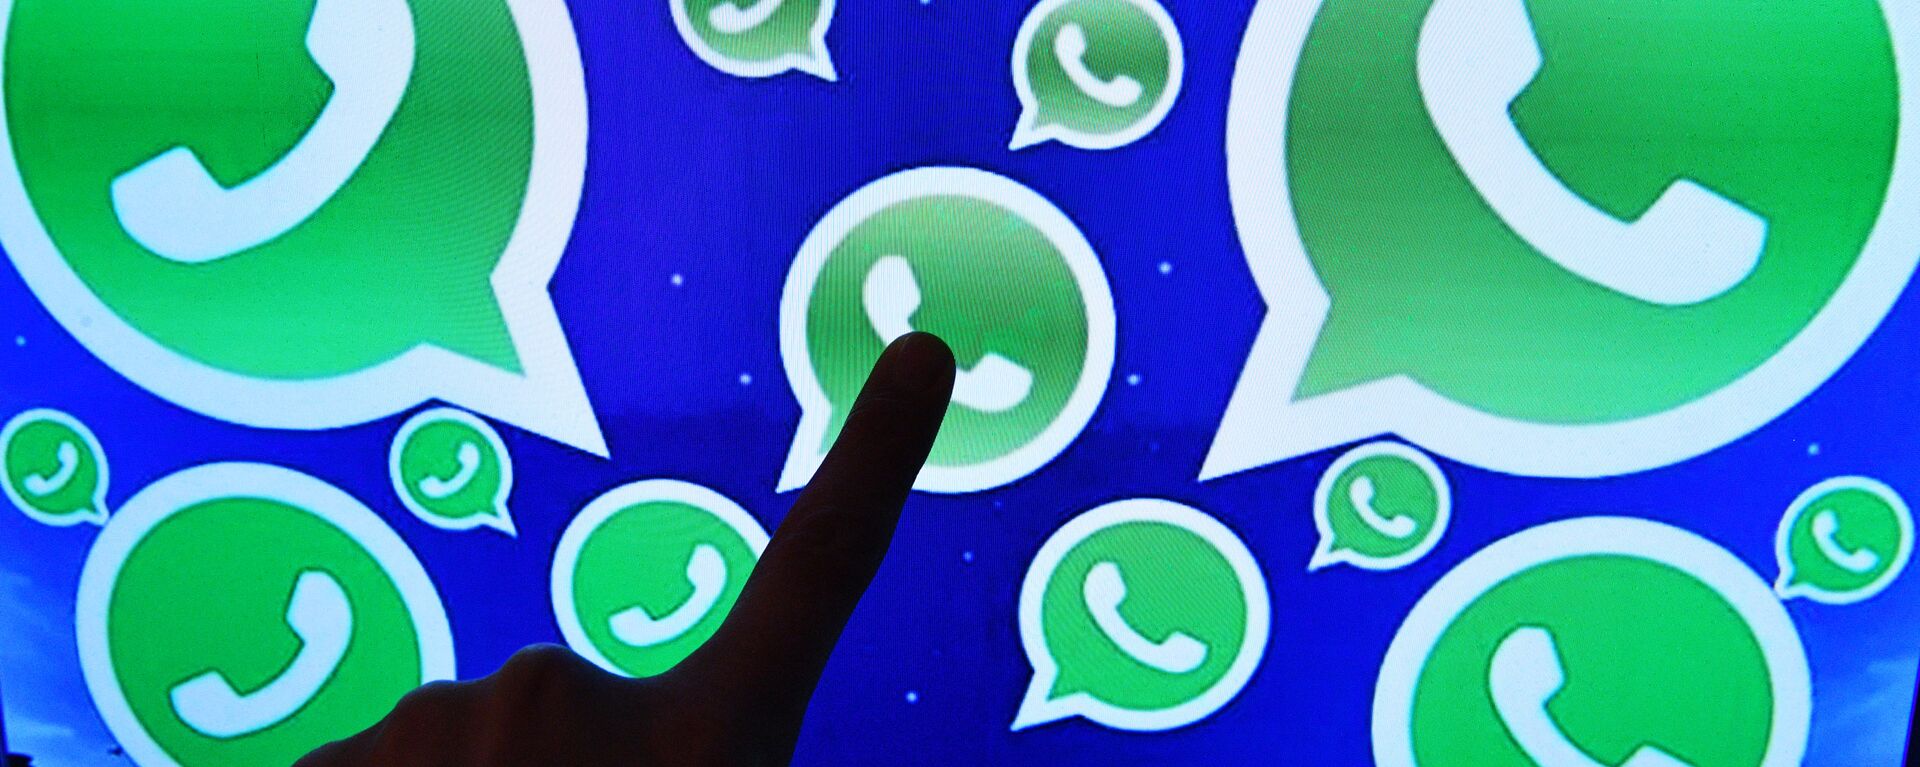 Una persona toca una pantalla en la que se ven diversos logotipos de la aplicación WhatsApp - Sputnik Mundo, 1920, 11.05.2021